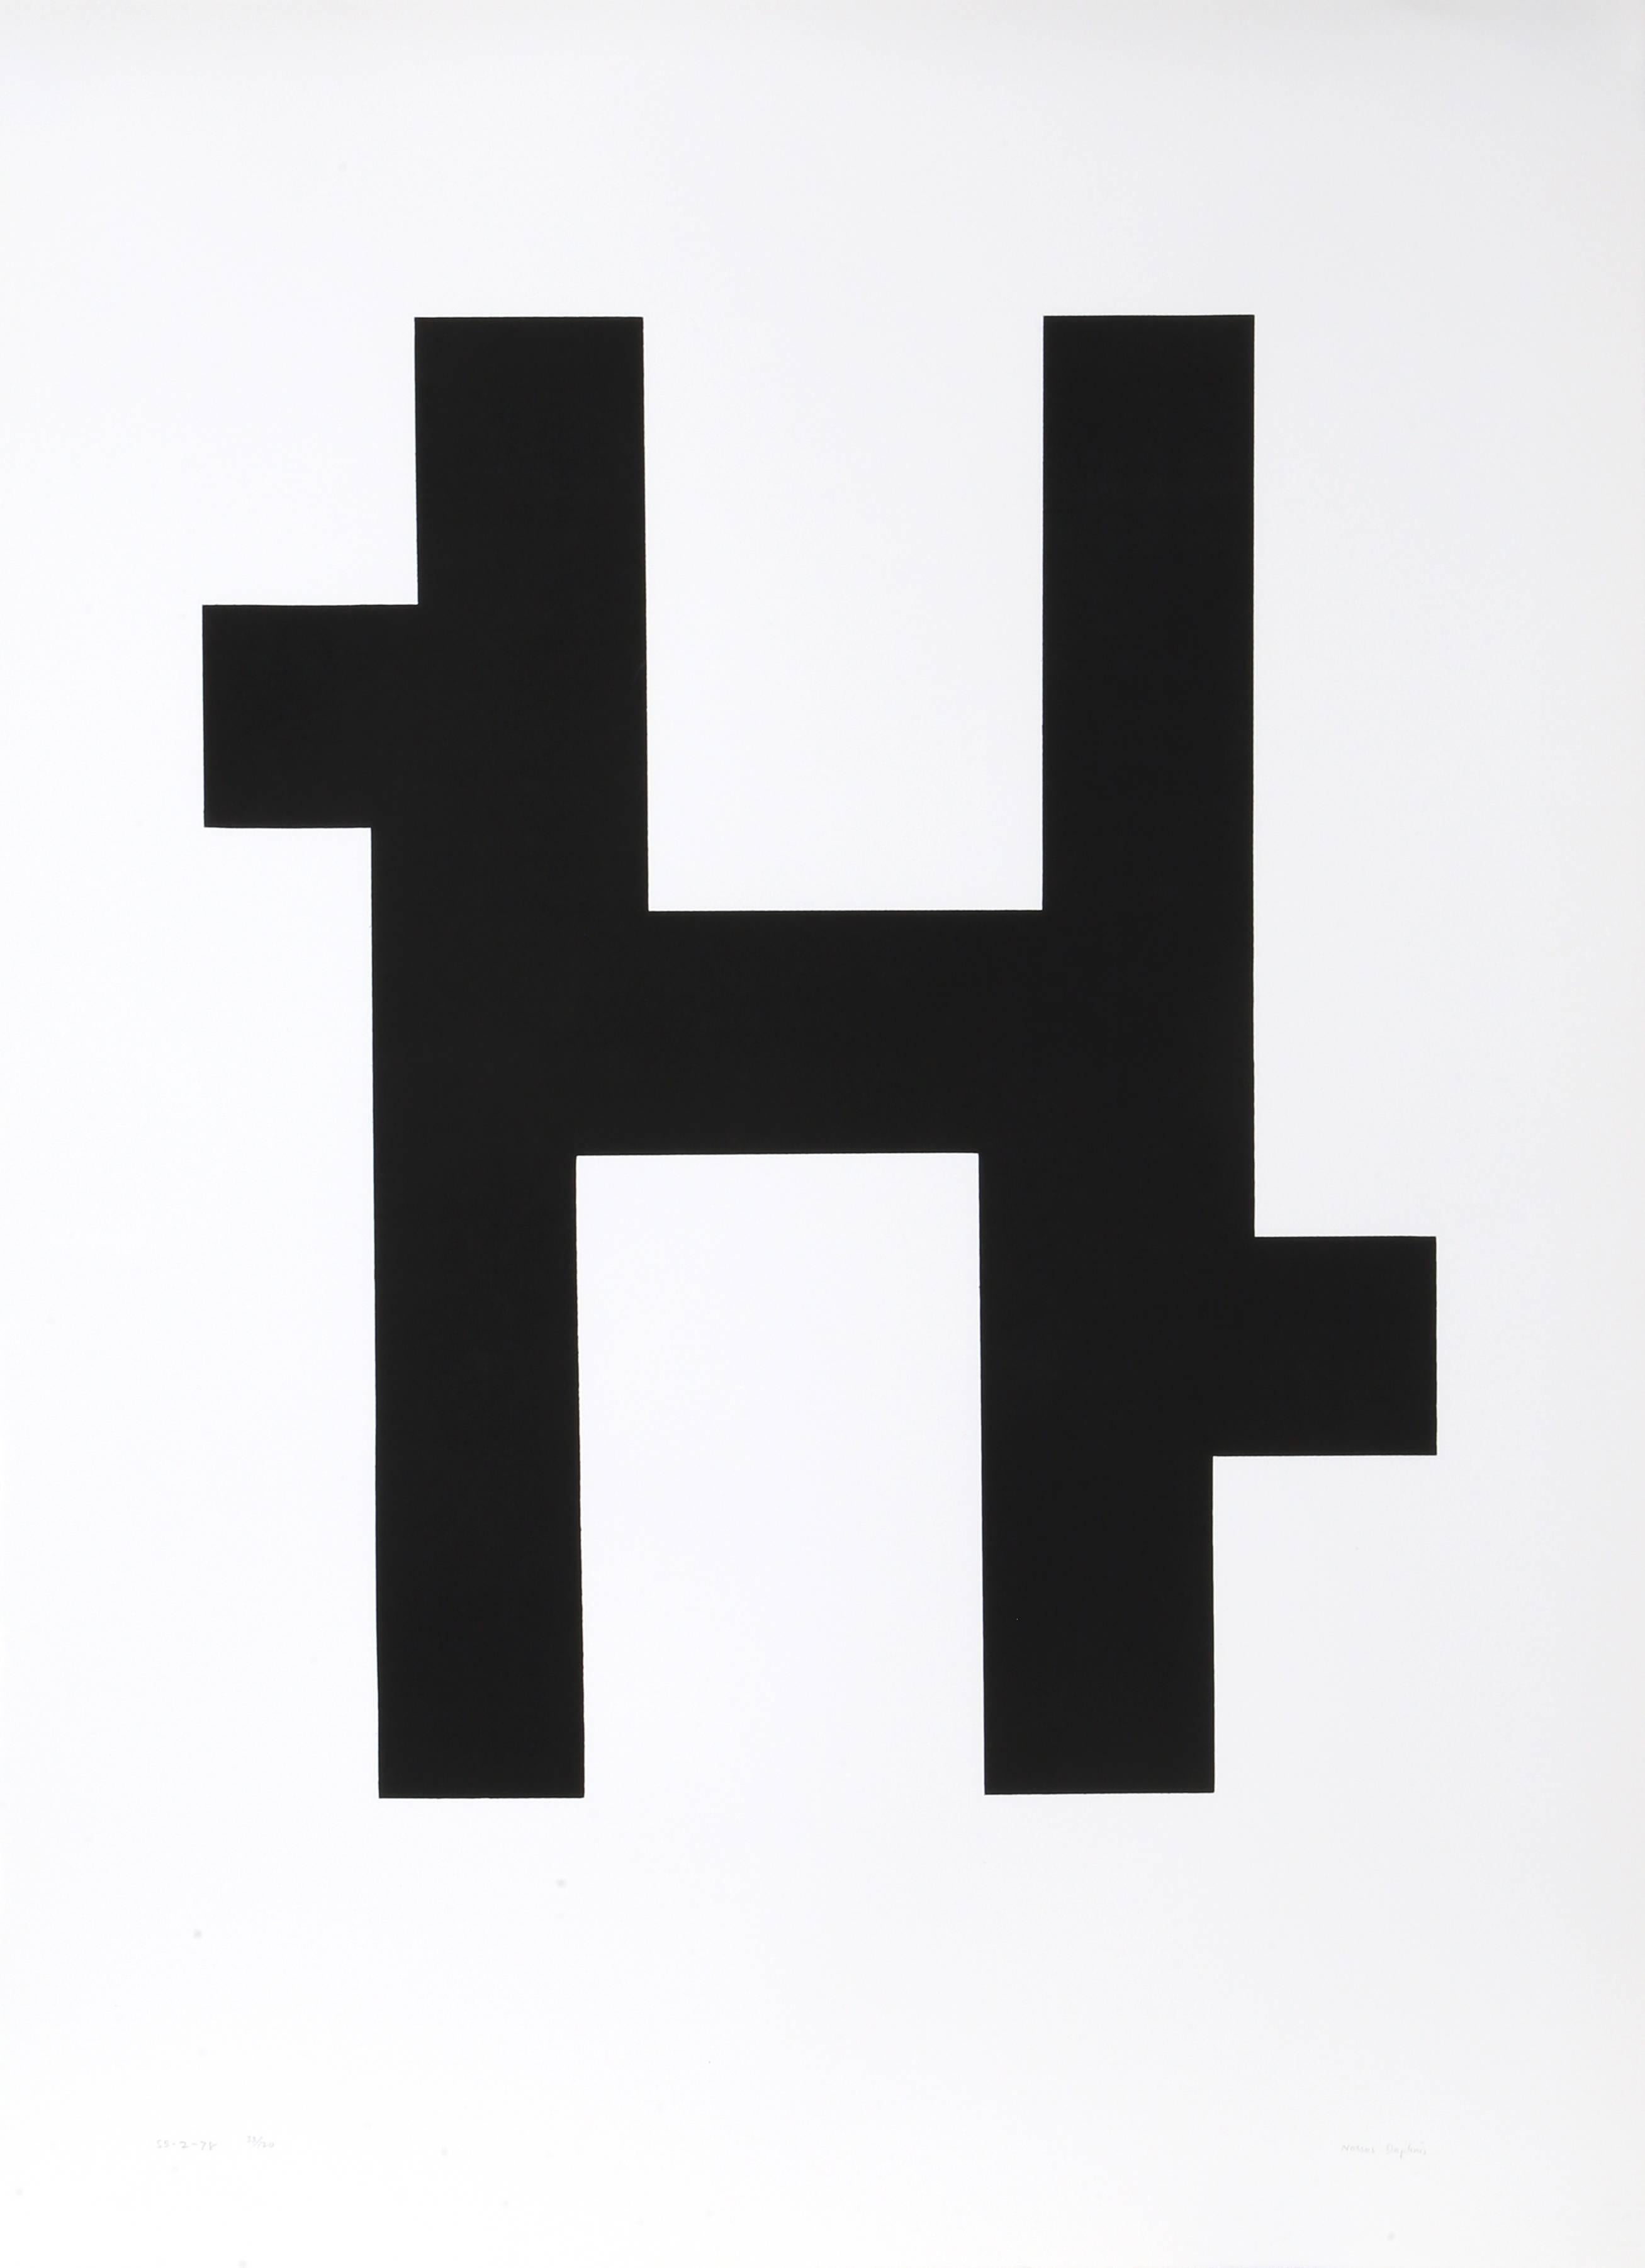 Künstler:  Nassos Daphnis, Grieche (1914 - )
Titel:  S-2-78
Jahr:  1978
Medium:  Siebdruck, signiert und nummeriert mit Bleistift
Auflage:  125
Bild: 19.5 x 17 Zoll
Größe:  30 x 22 Zoll